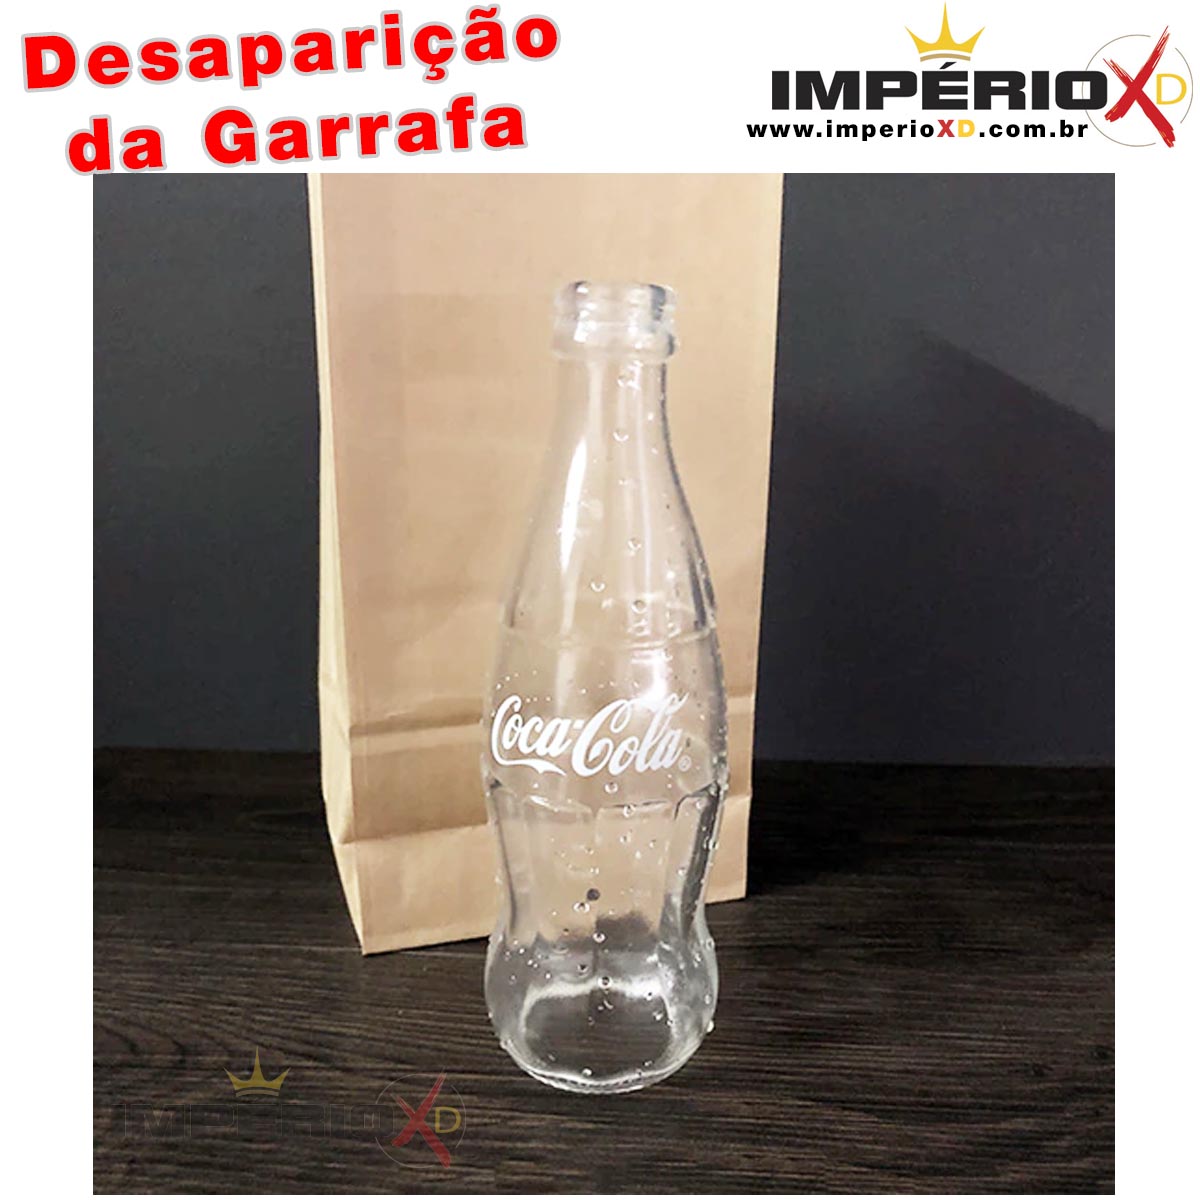 Desaparição da Garrafa de Coca-Cola no Saquinho - Vanishing Coke Bottle